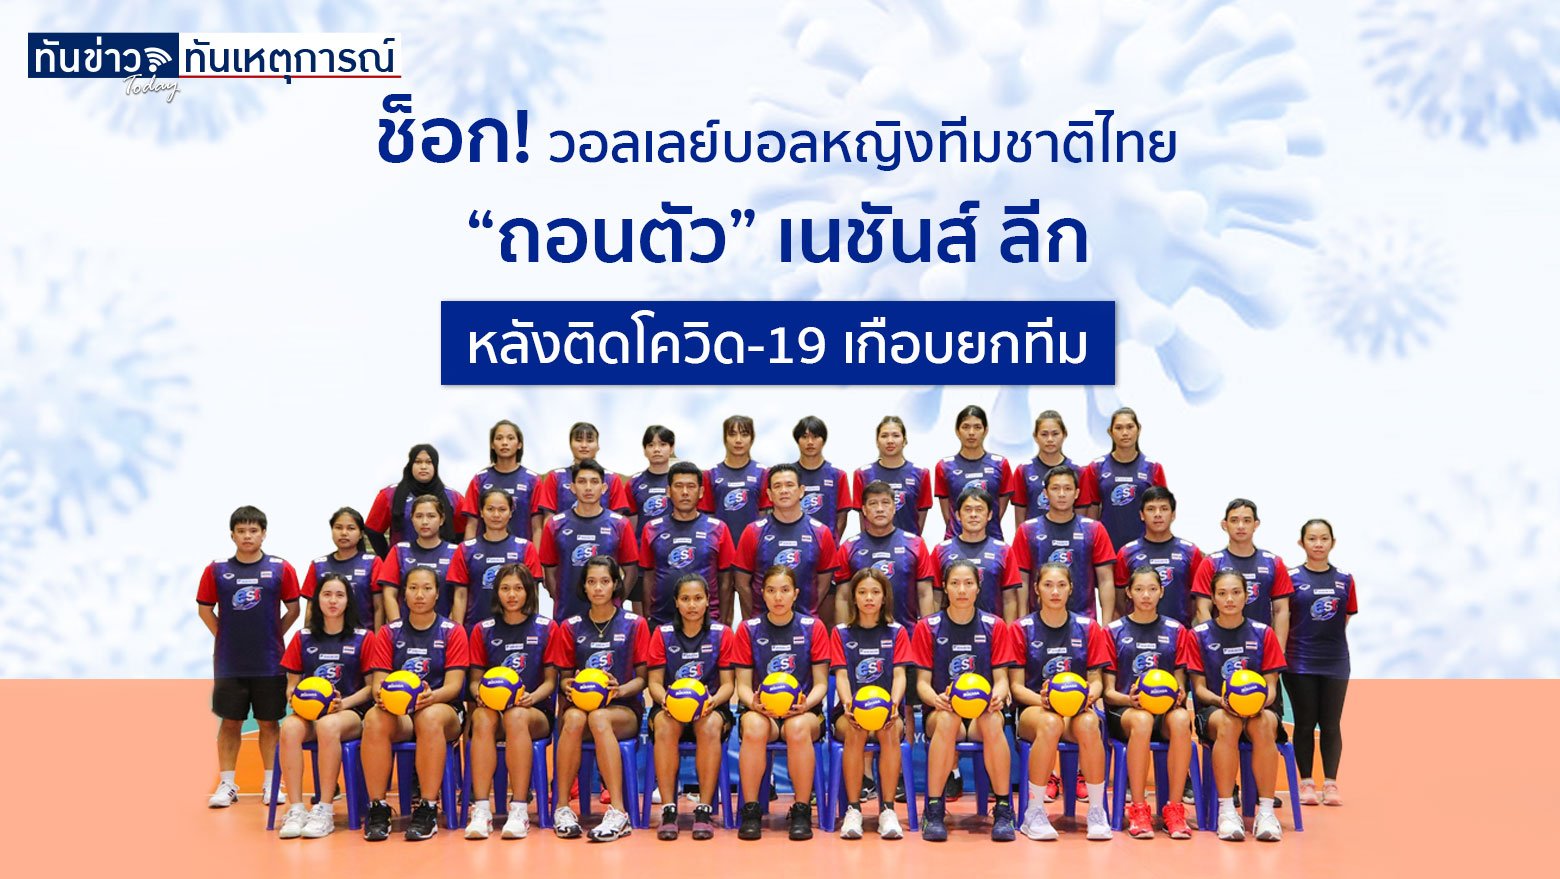 ช็อก! วอลเลย์บอลหญิงทีมชาติไทย “ถอนตัว” เนชันส์ ลีก หลังติดโควิด-19 เกือบยกทีม